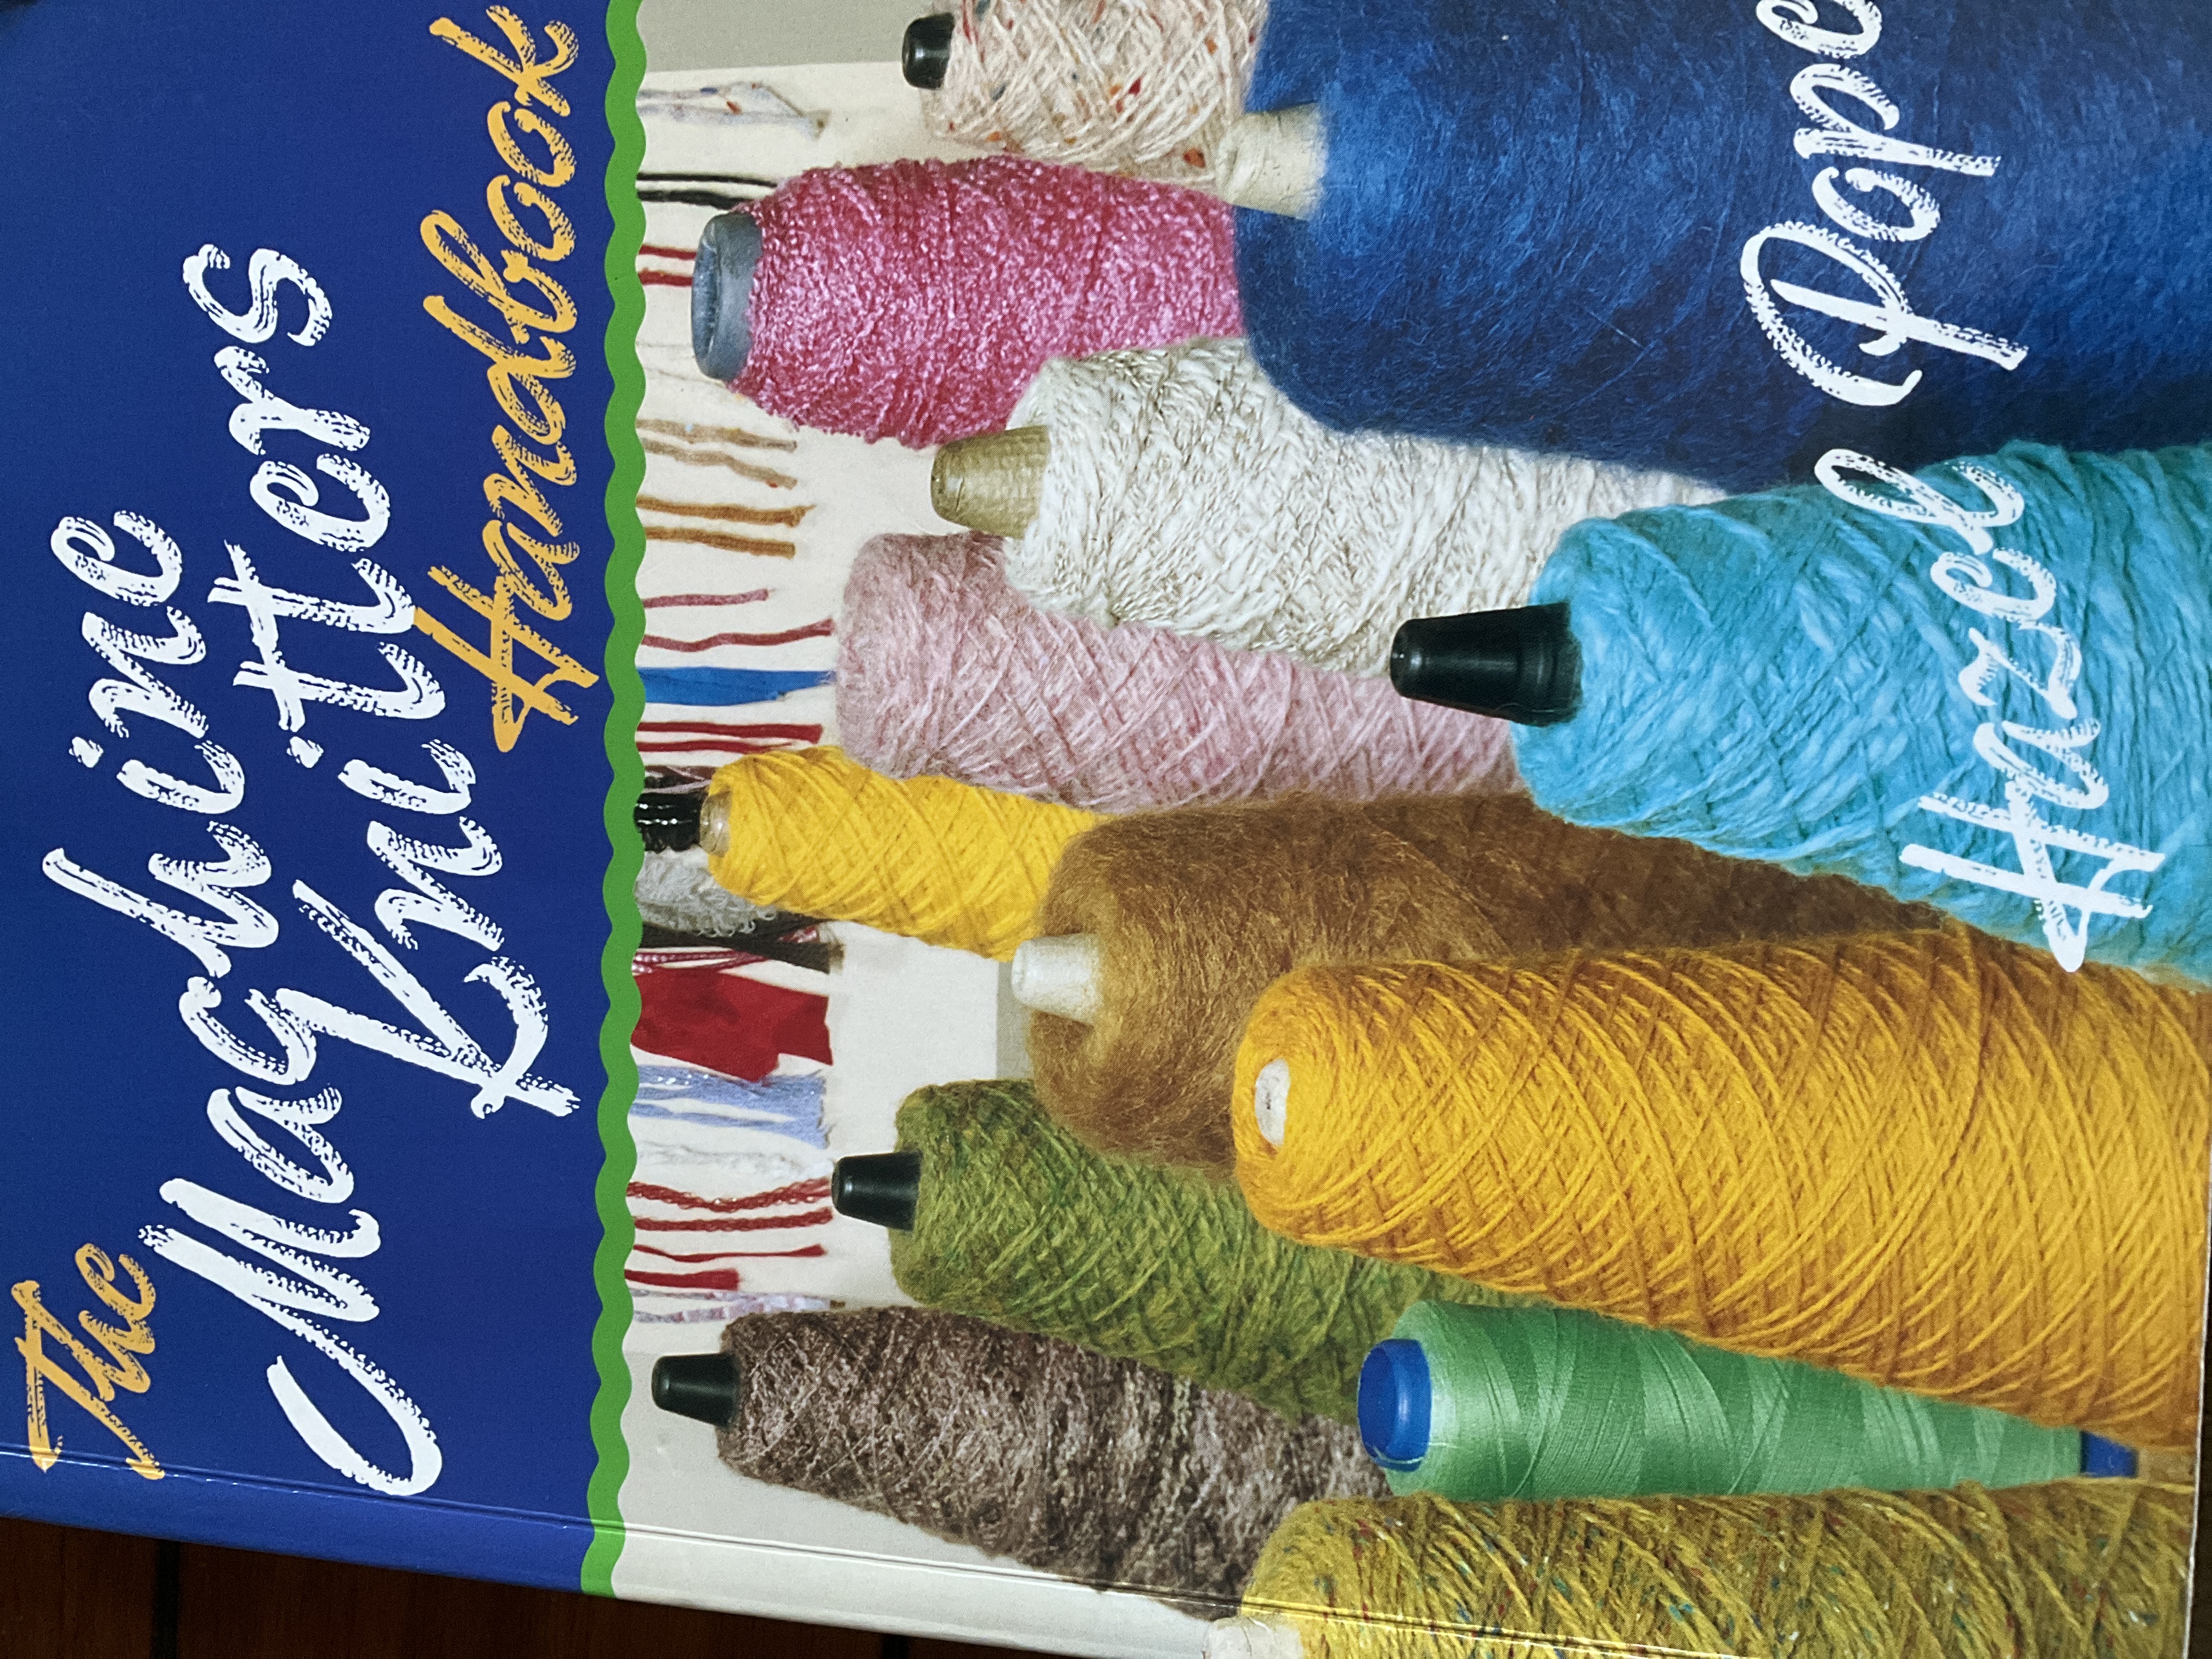 The Machine Knitter's Handbook